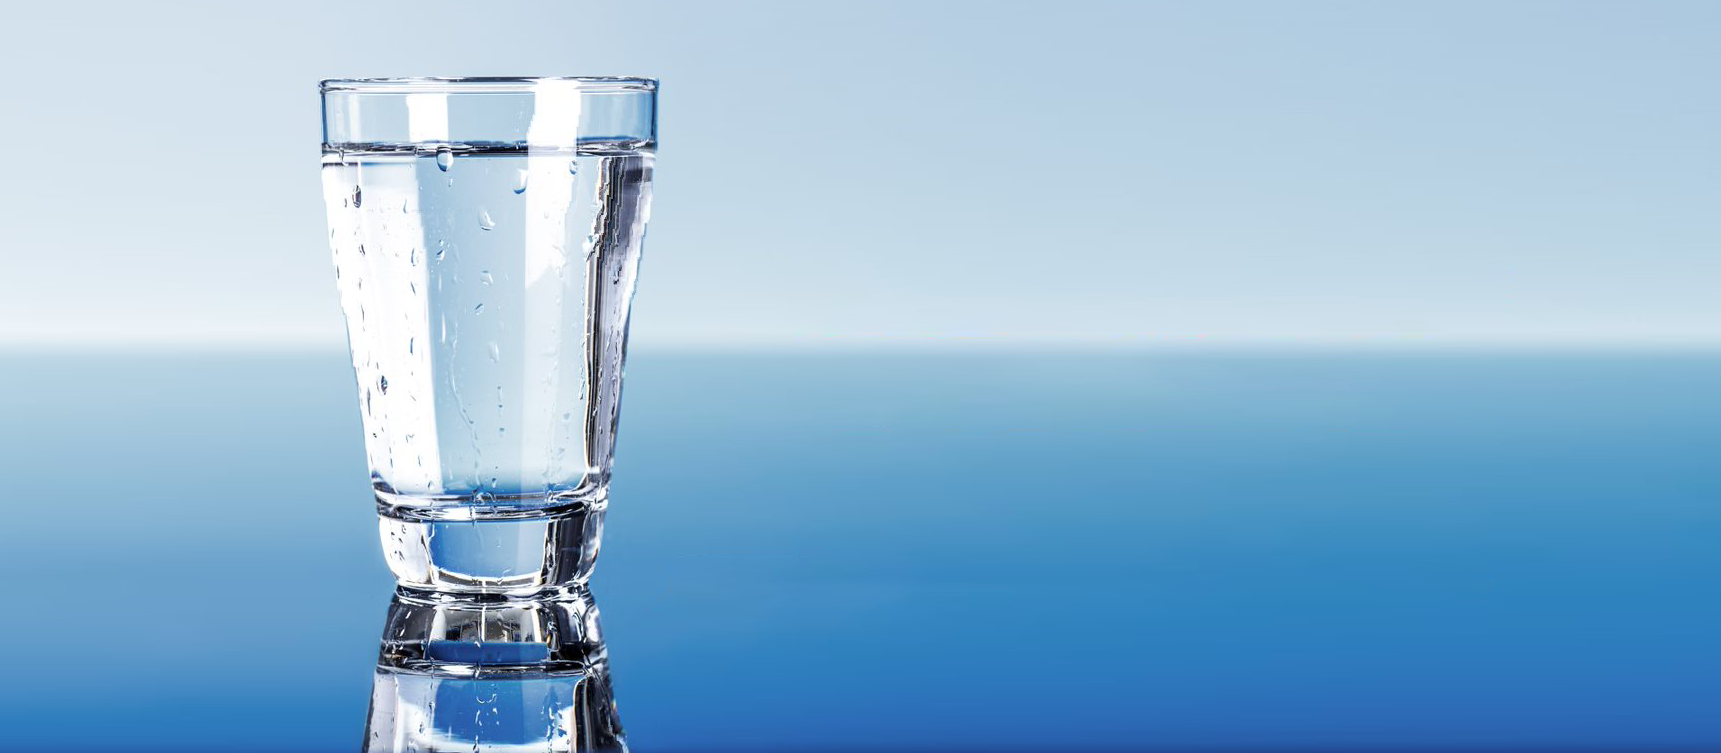 Un vaso de agua clara sobre un fondo azul degradado.